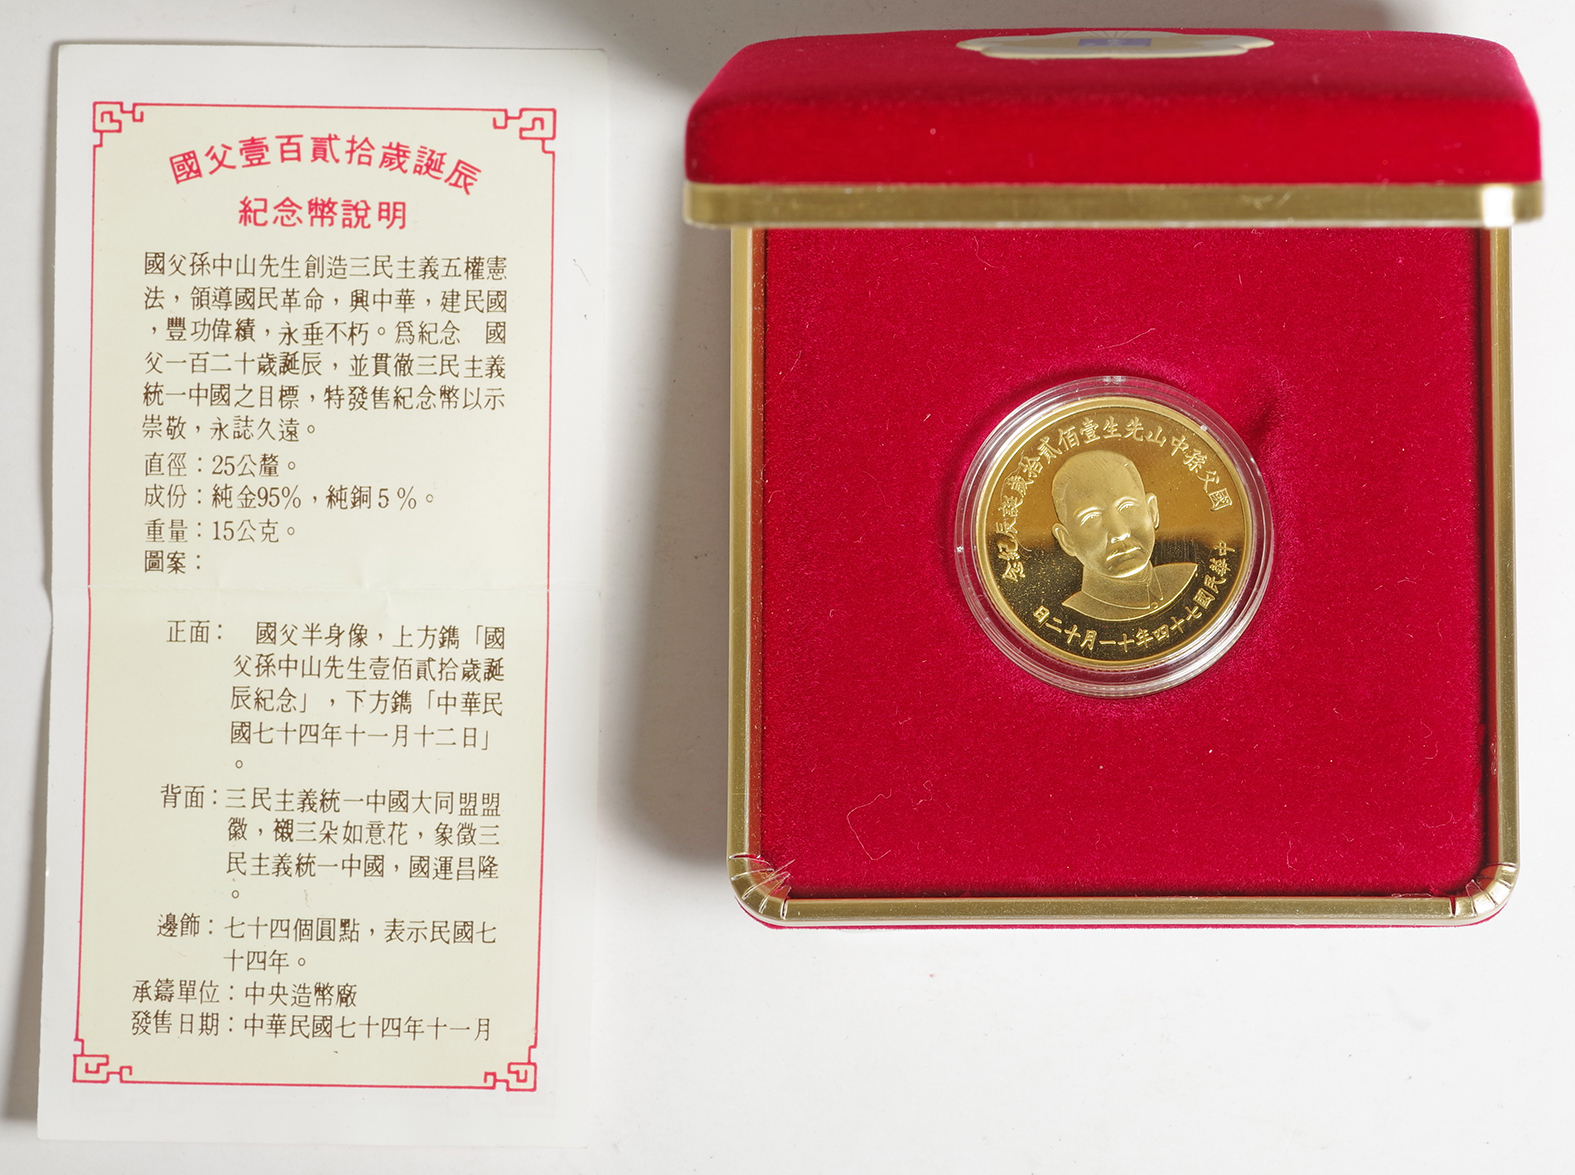 國父孫中山先生 百年誕辰記念 中華民国 54年11月12日 記念メダル 